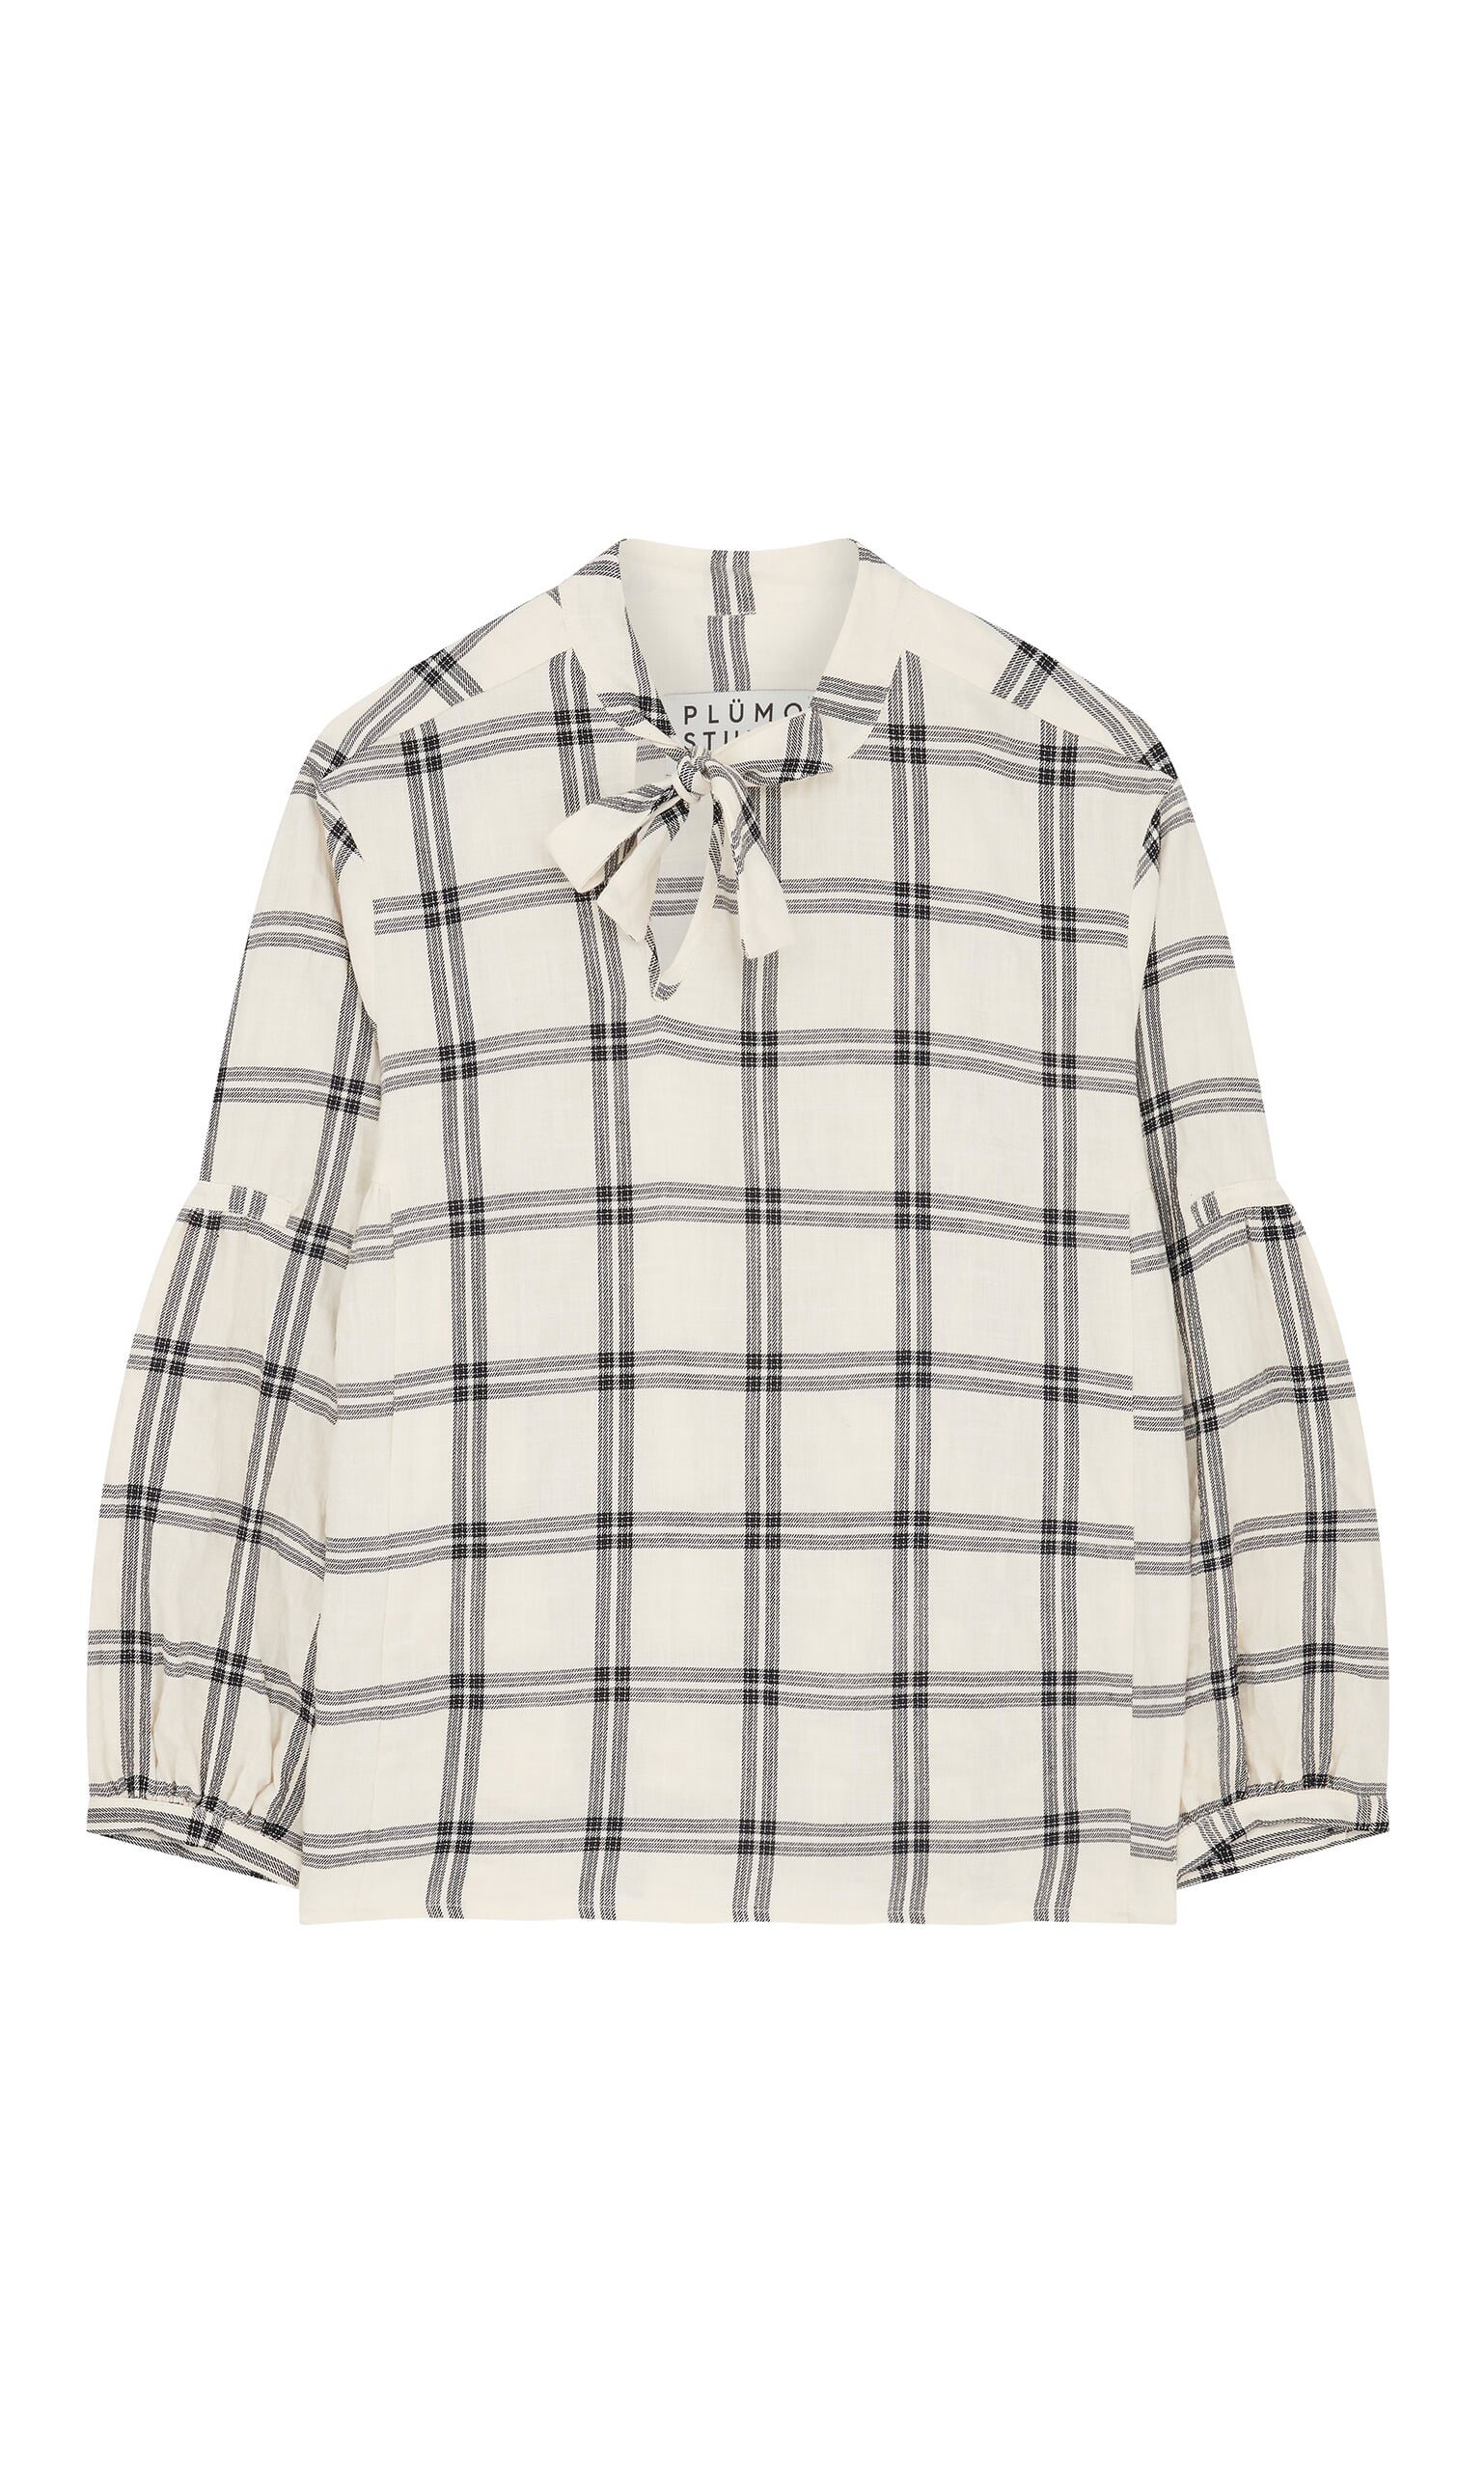 Deveaux blouse - Plümo Ltd